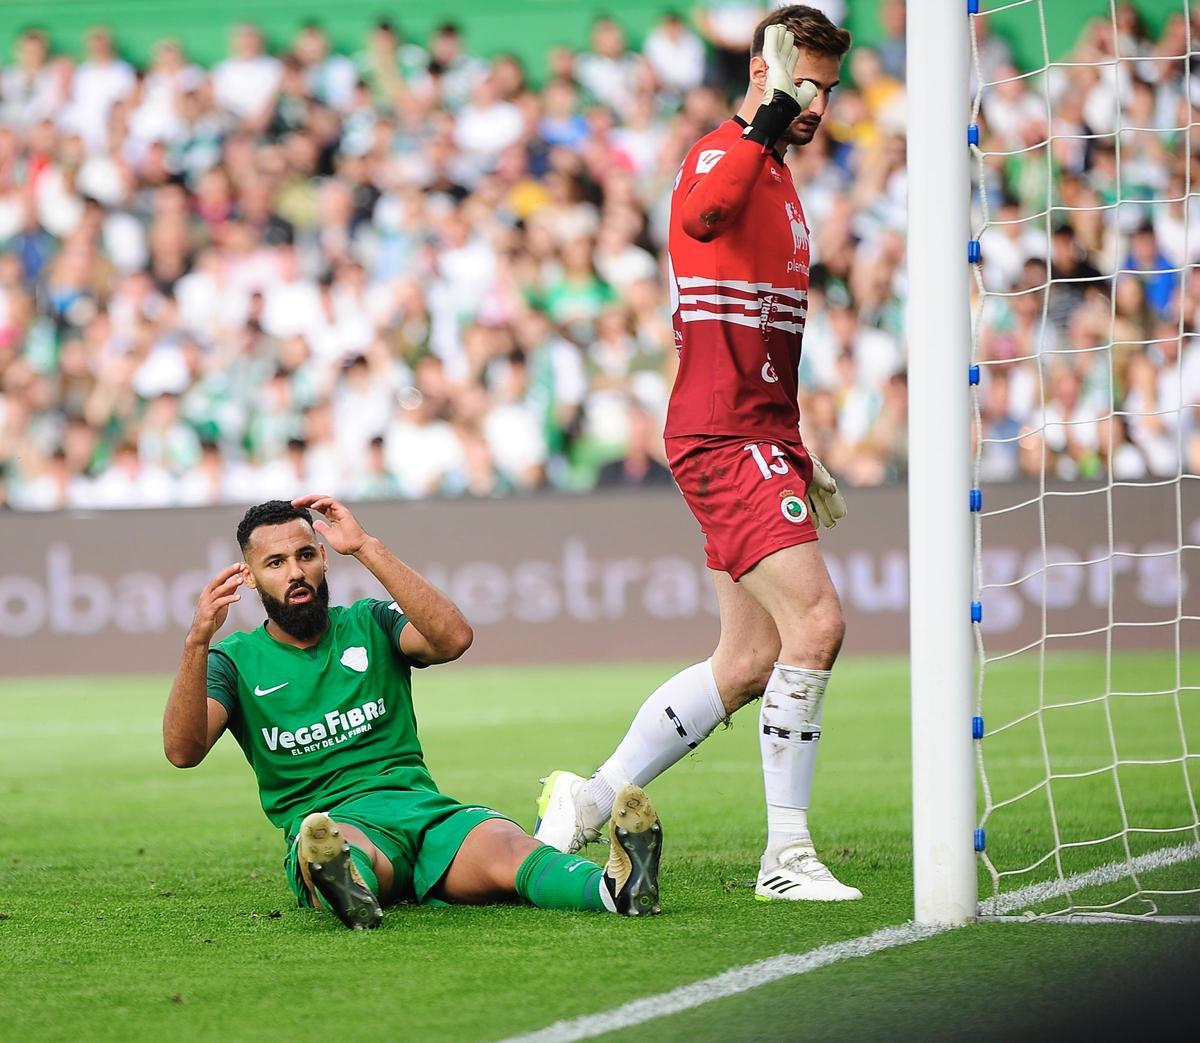 Mourad se lamenta tras fallar una ocasión del gol, el pasado sábado en Santander